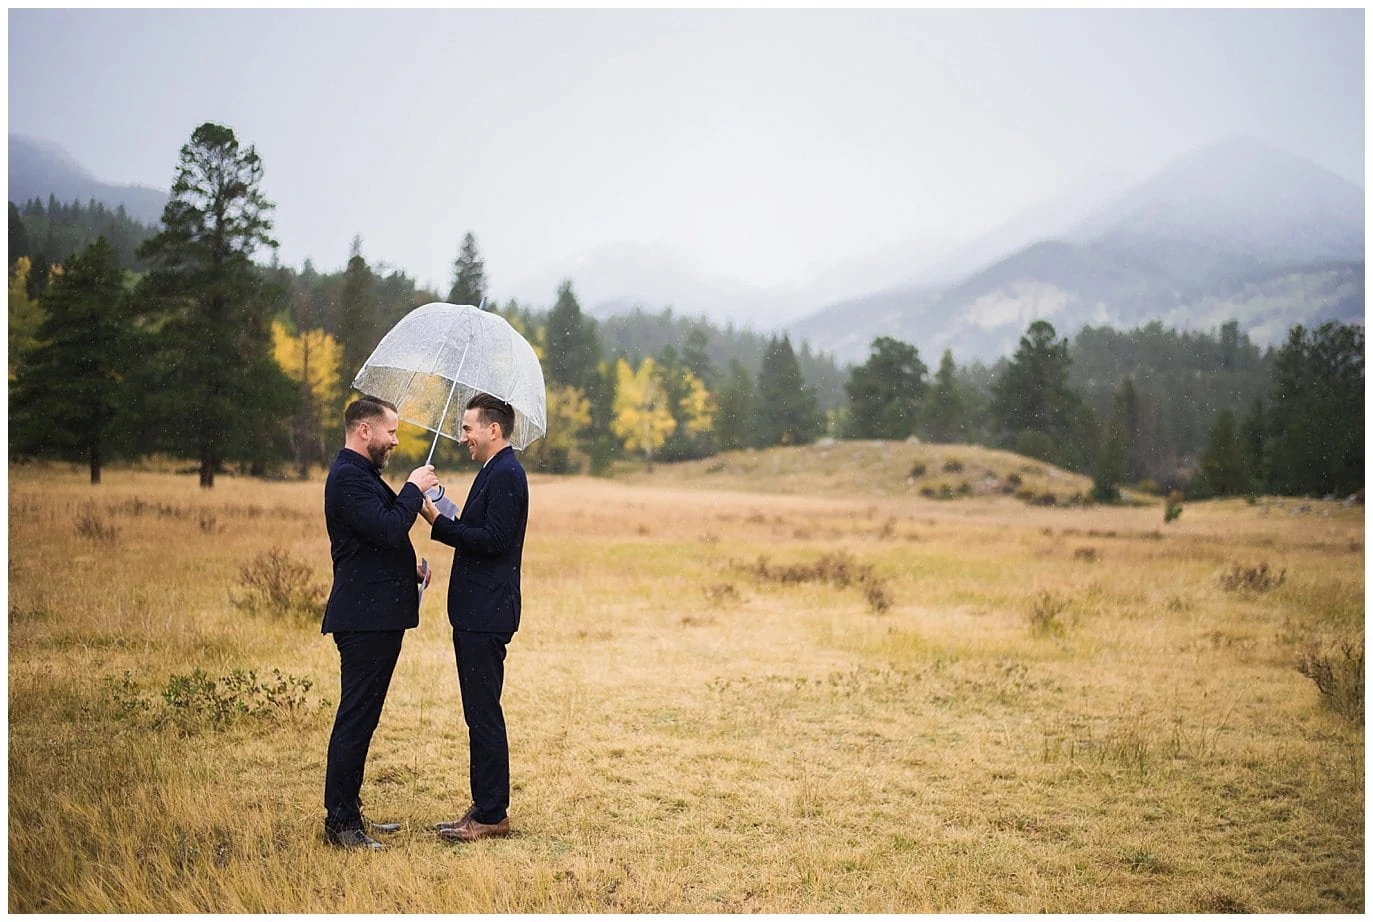 exchanging vows under umbrella photo